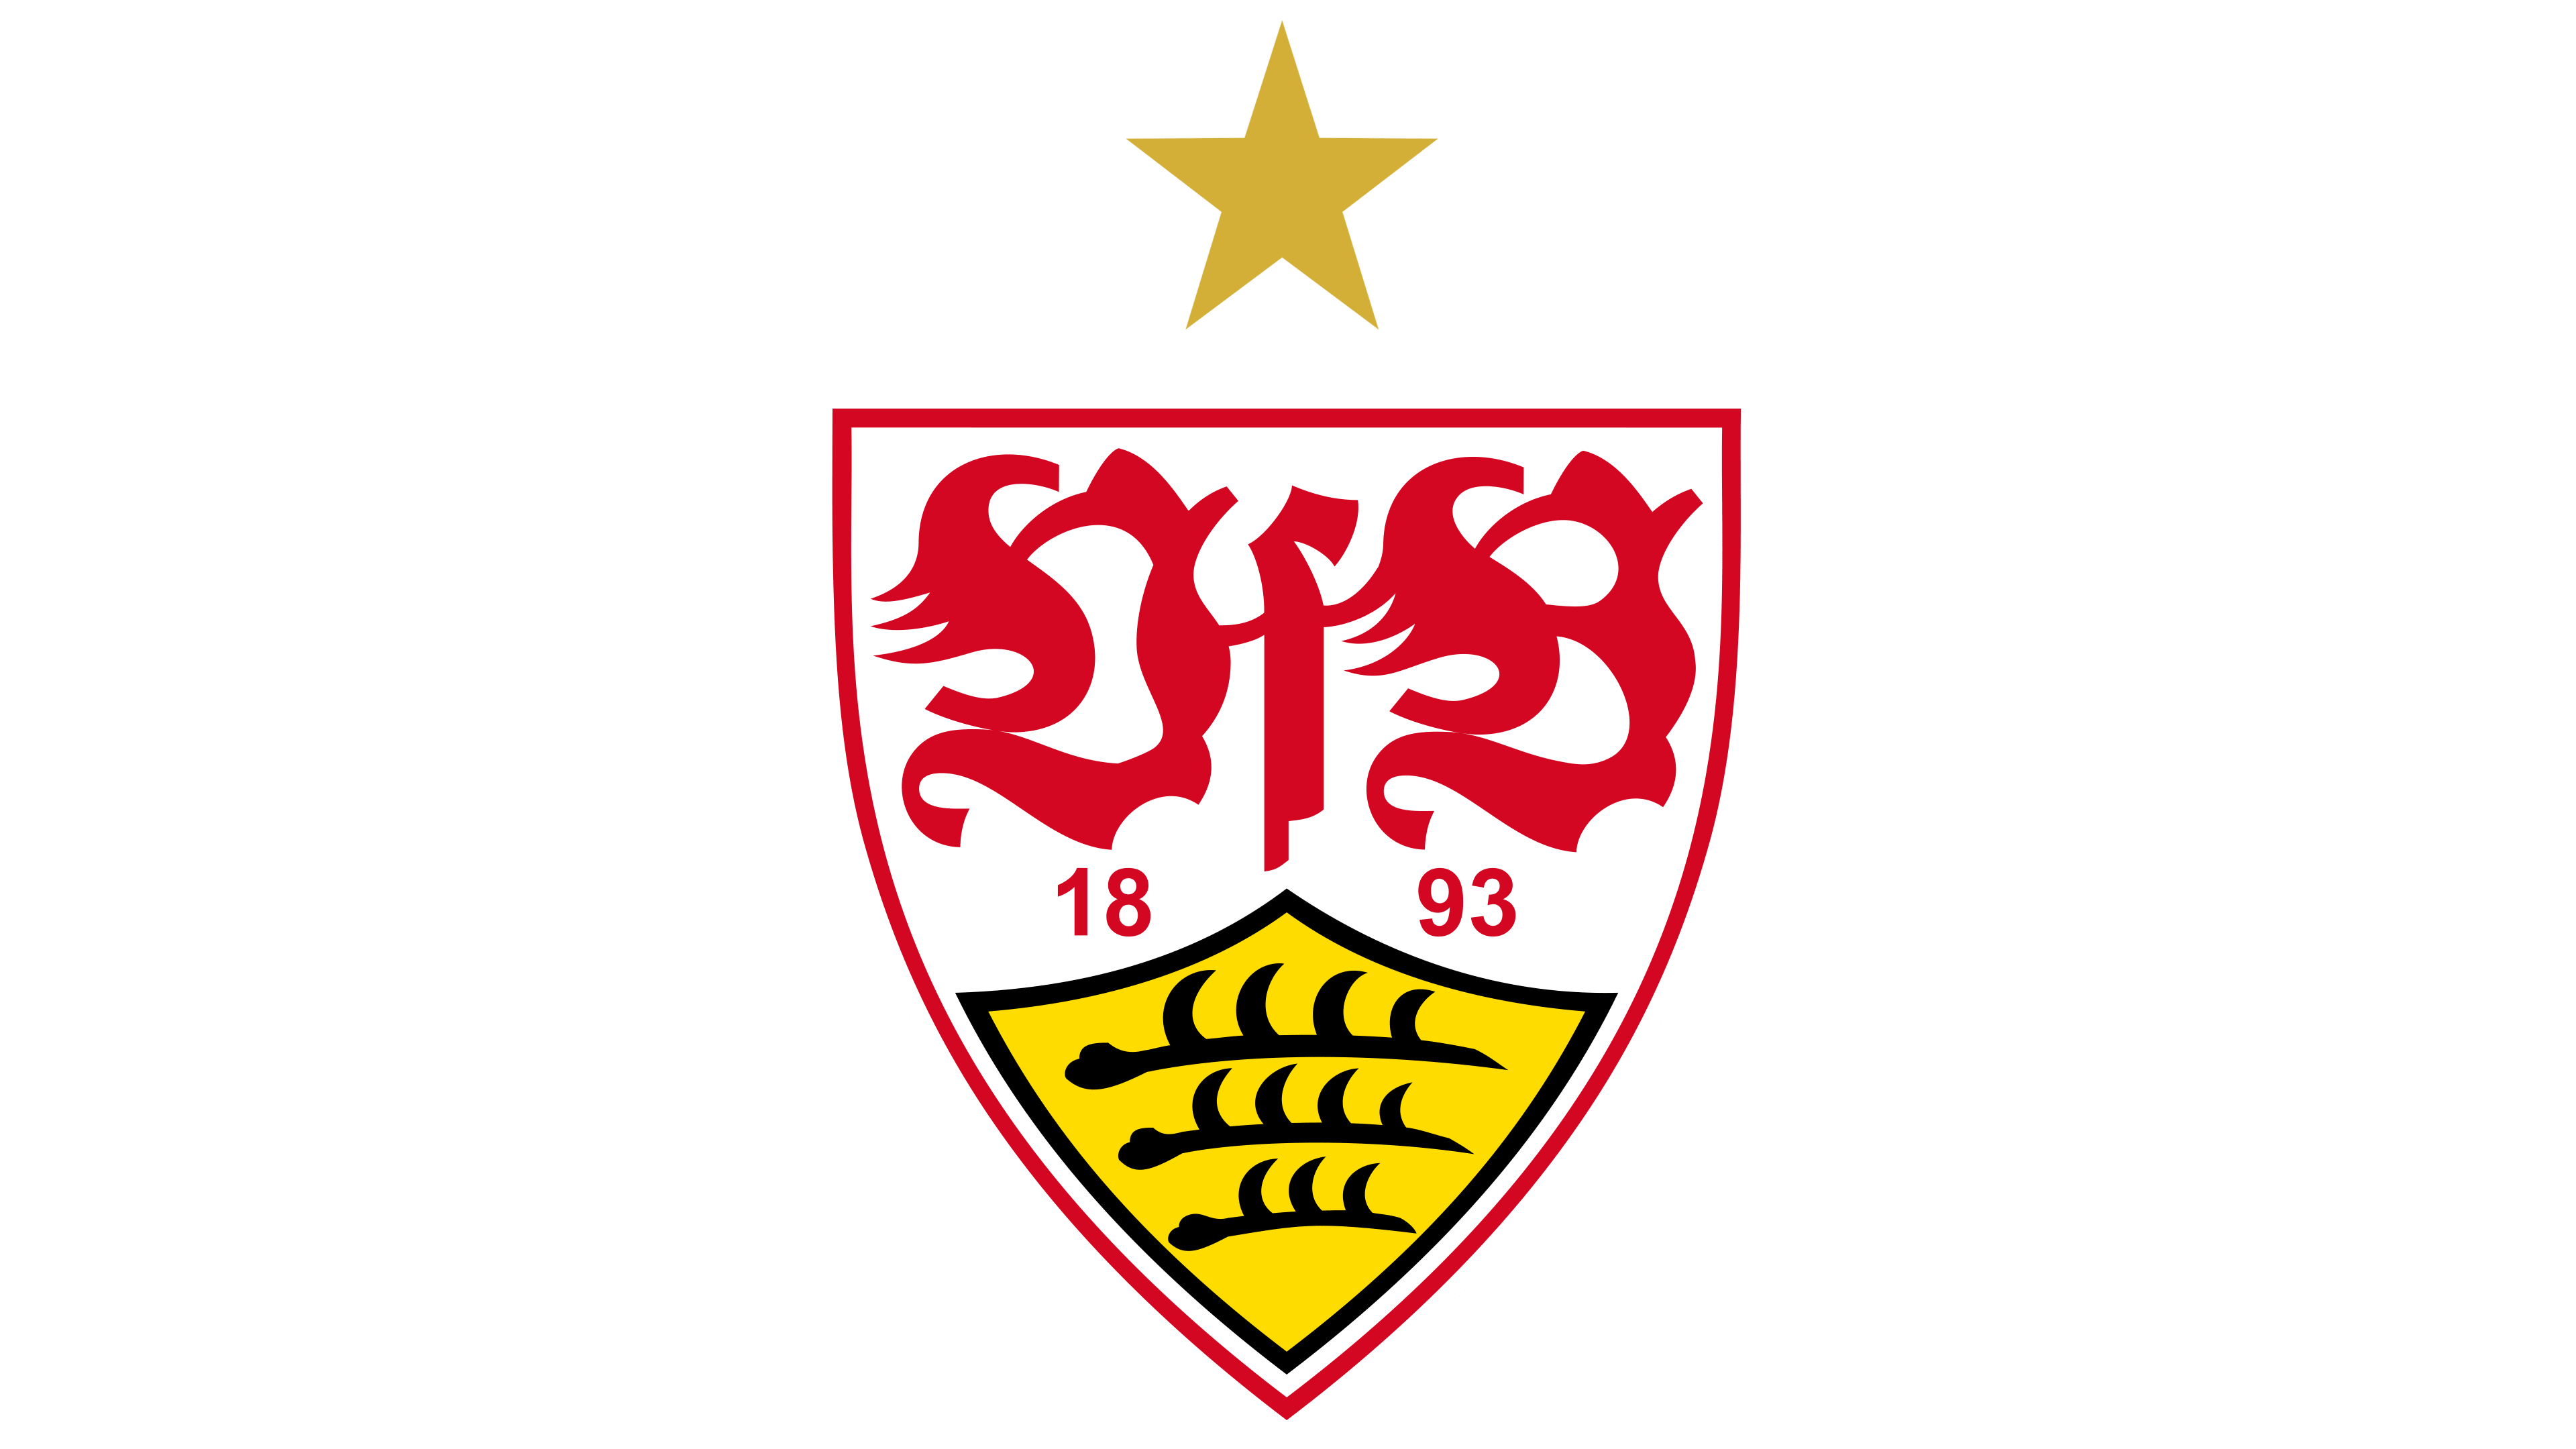 VfB Stuttgart Logo